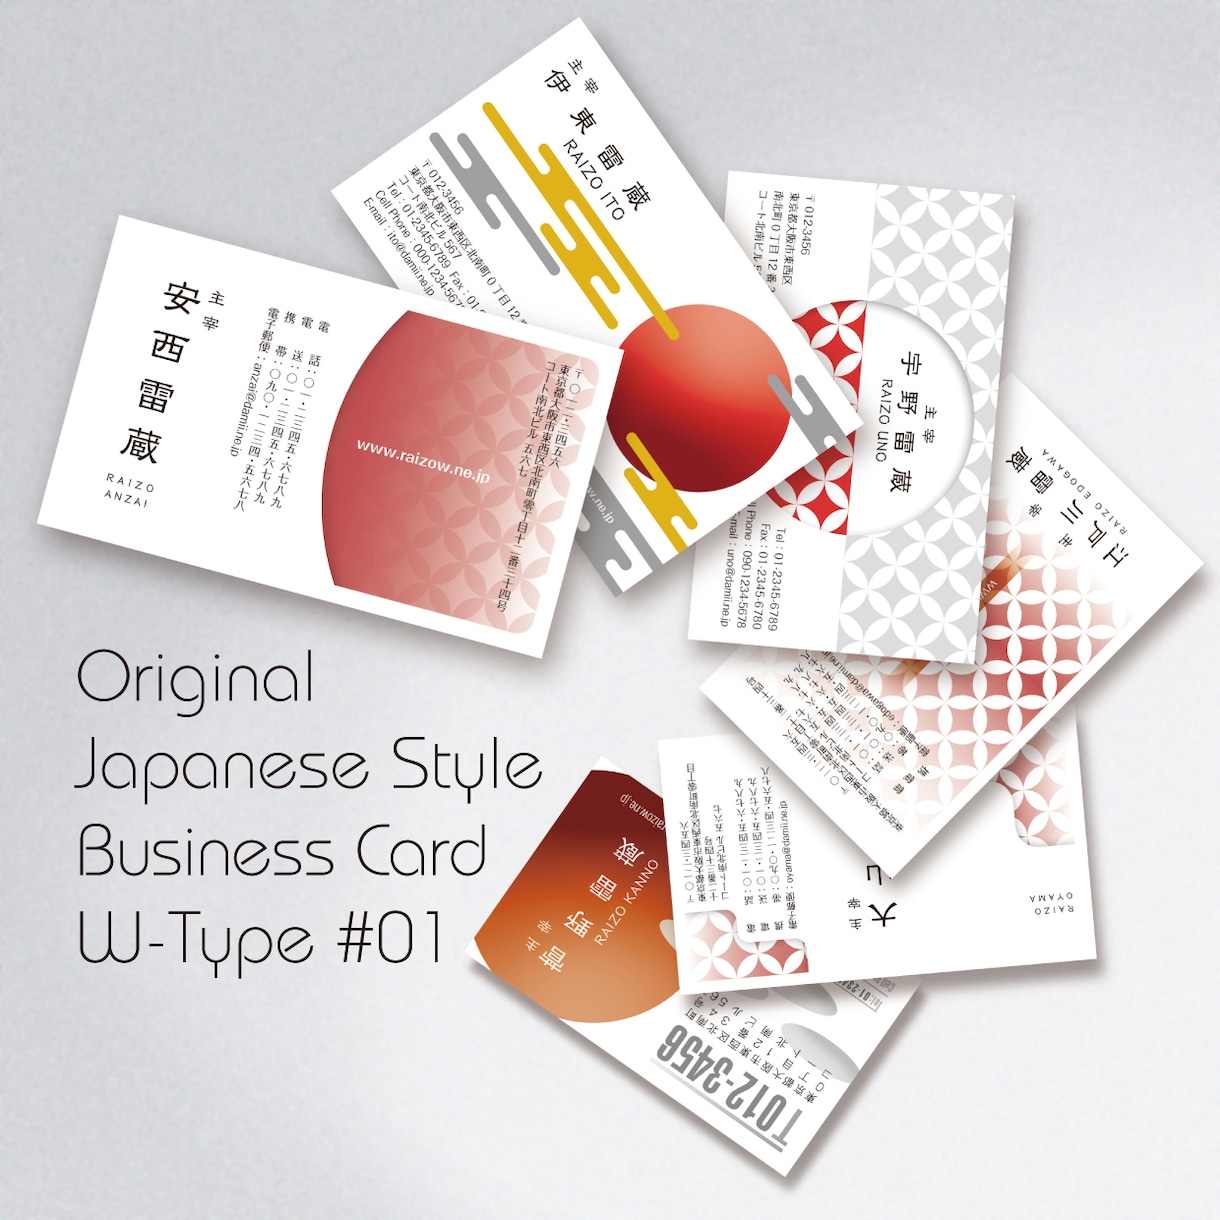 和風名刺およびカード、封筒などのデザインを行います 日本古来の和柄を現代風にアレンジしたデザインを行います。 イメージ1